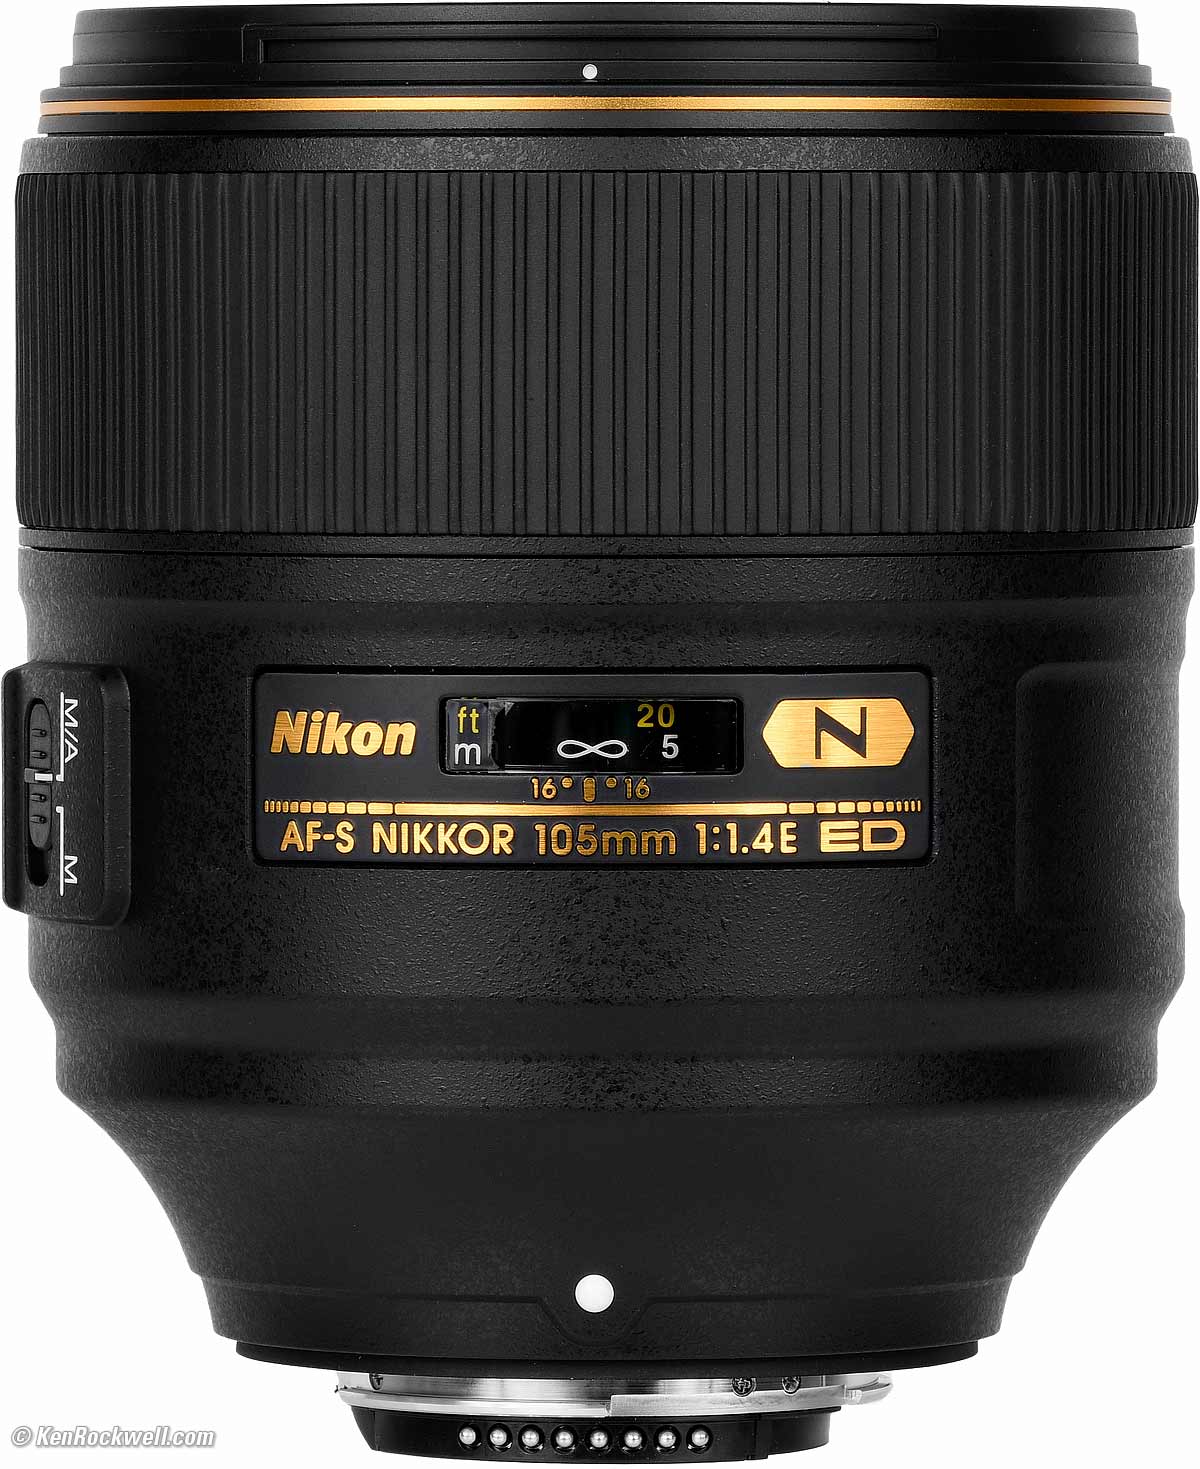 Nikon 105mm f/1.4 Review